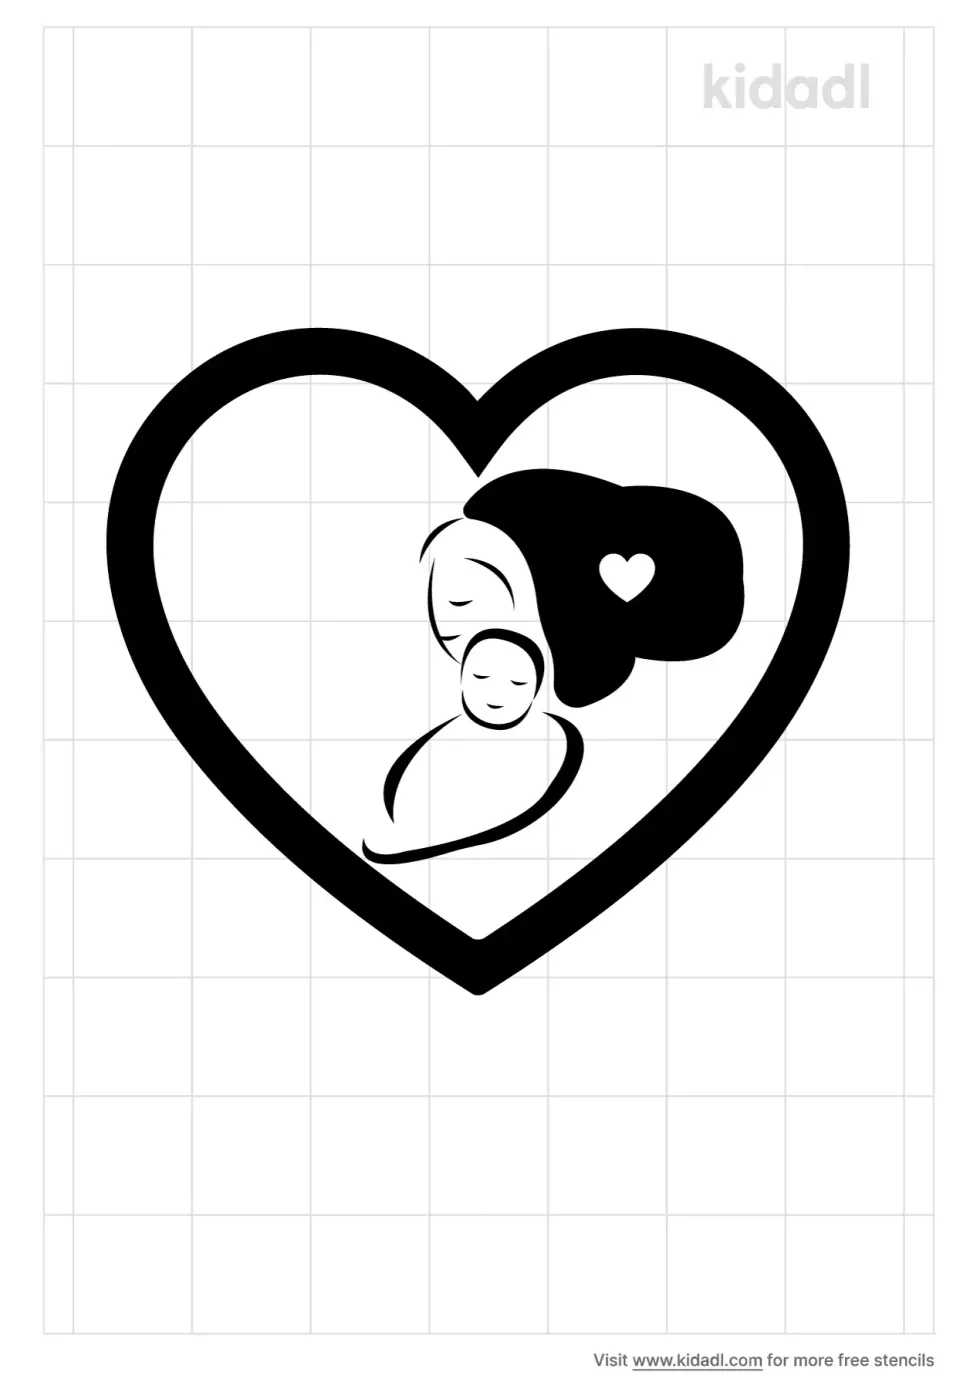 Child And Mom Heart Stencil